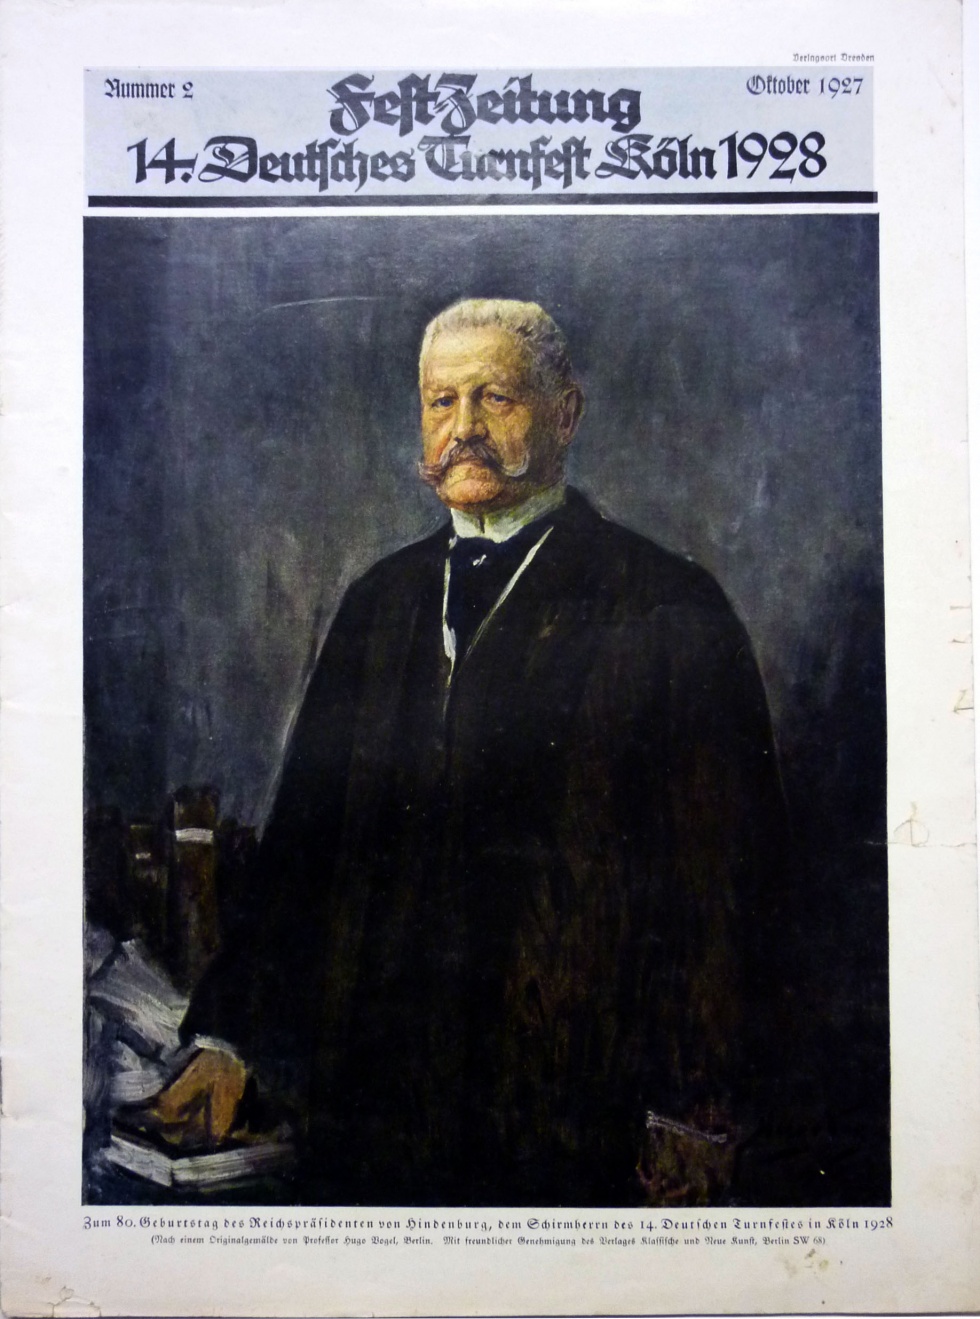 Festzeitung Nr. 2 / Oktober 1927 (Museum Wolmirstedt RR-F)